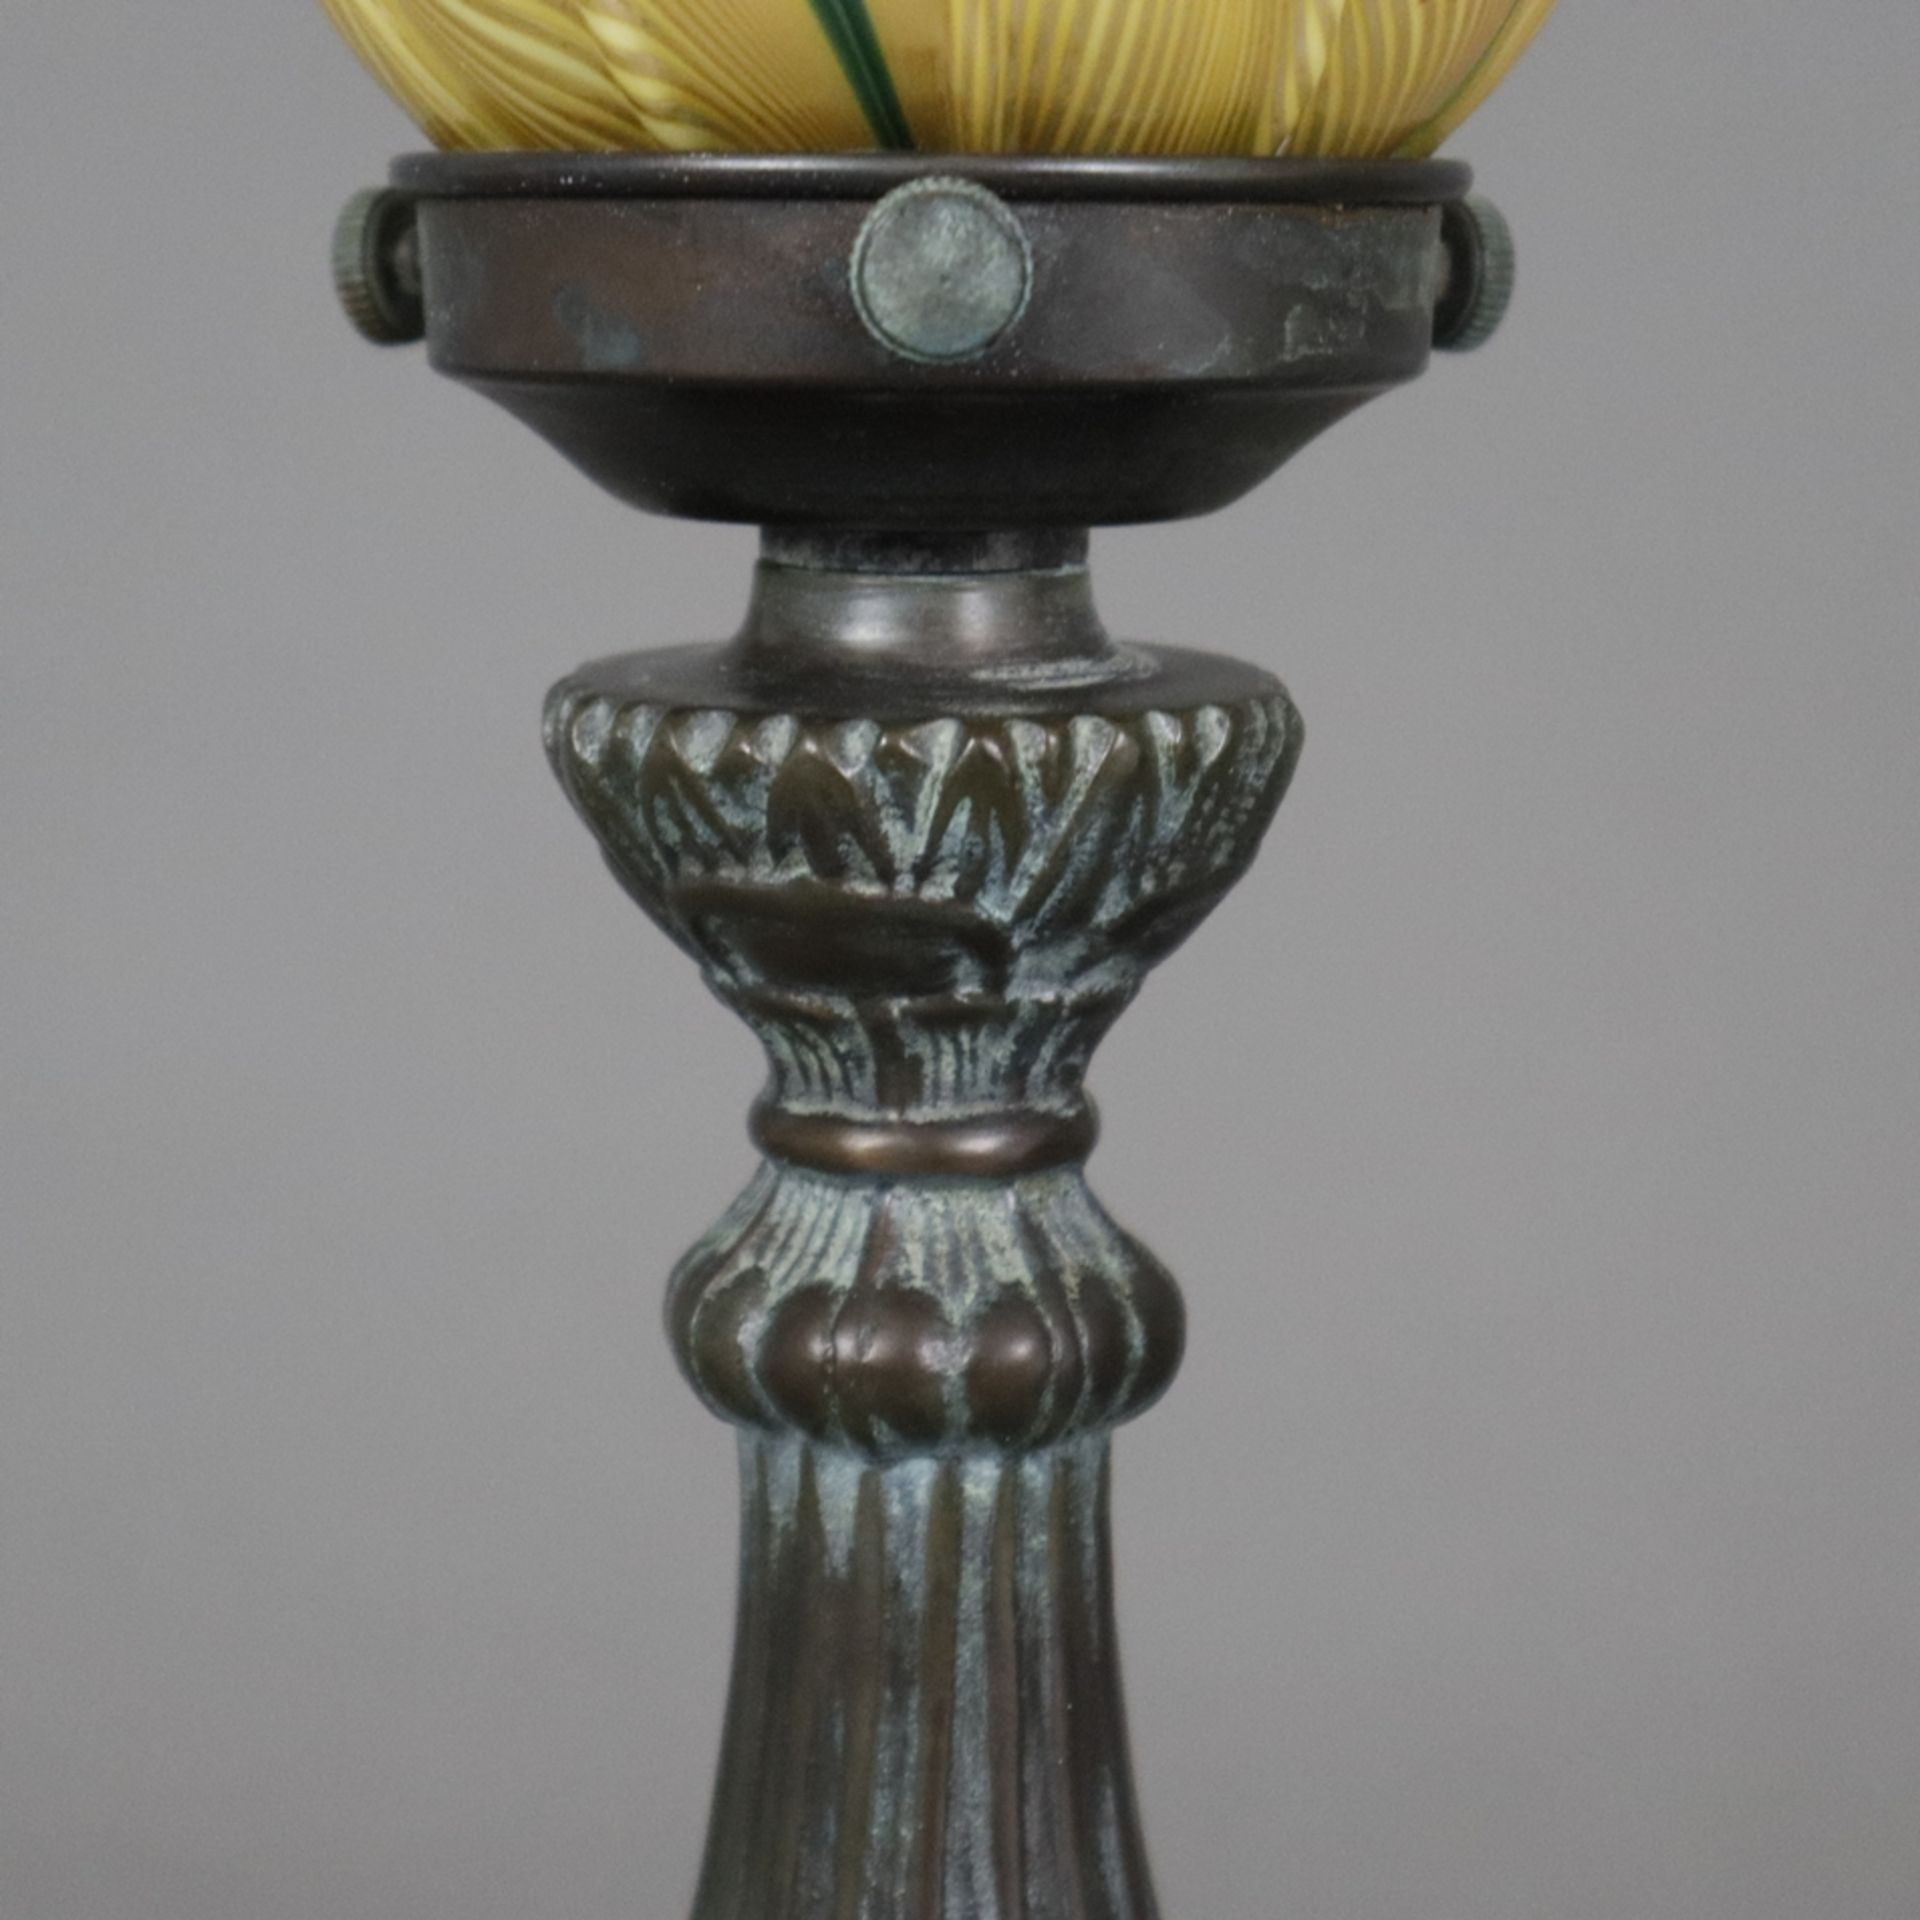 Jugendstil Tischlampe - um 1900/10, floral reliefierter Metallfuß, bronziert, glockenförmiger Glass - Bild 4 aus 7